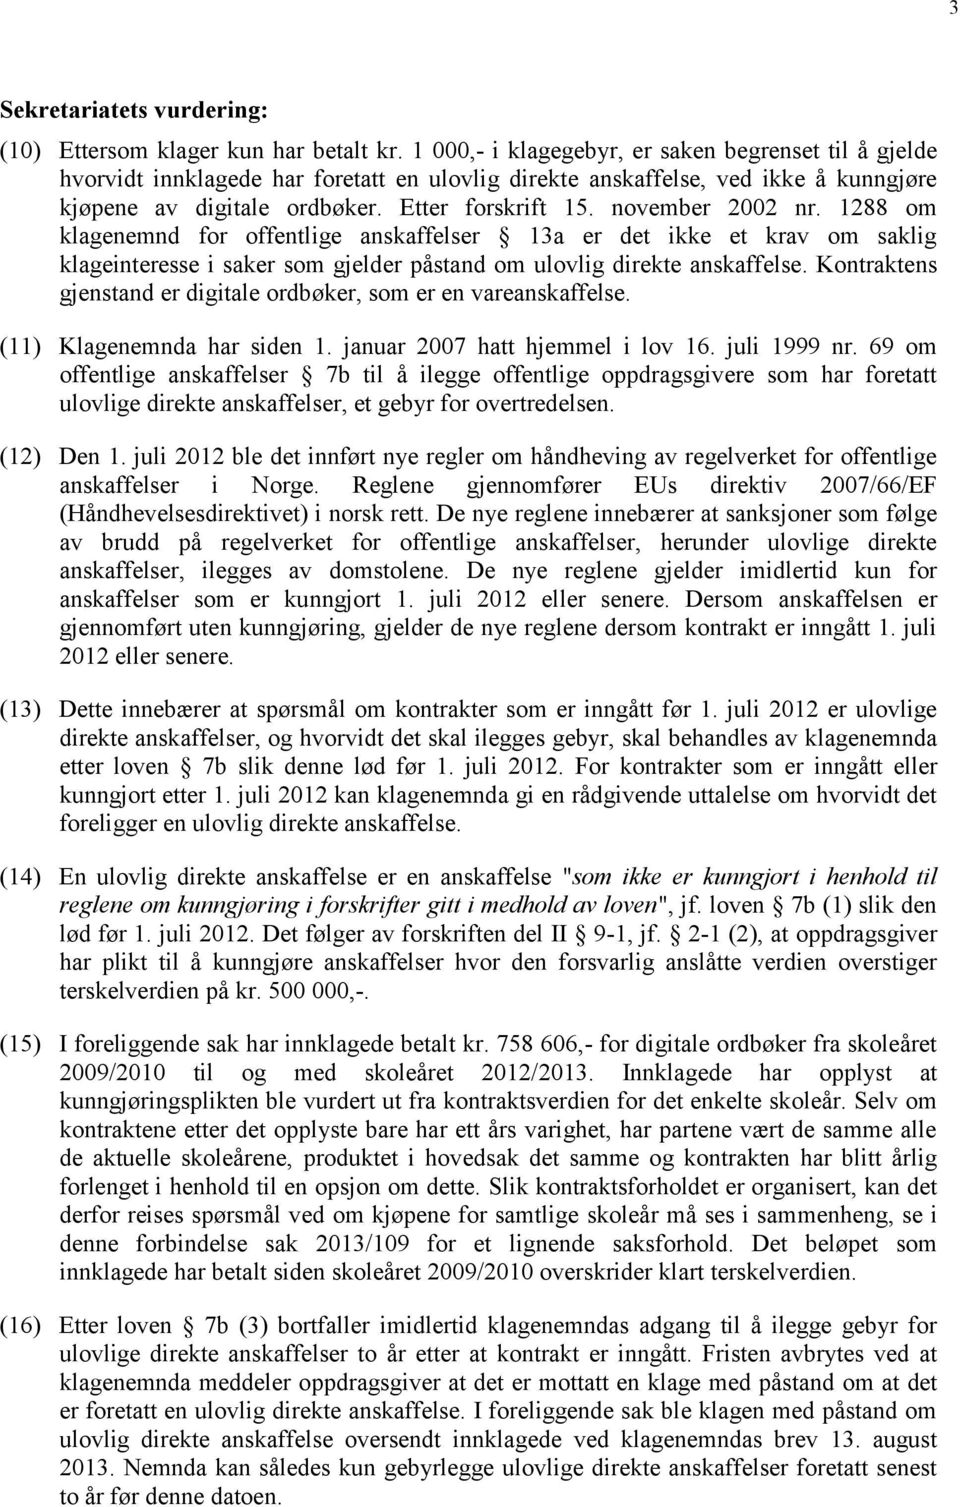 november 2002 nr. 1288 om klagenemnd for offentlige anskaffelser 13a er det ikke et krav om saklig klageinteresse i saker som gjelder påstand om ulovlig direkte anskaffelse.